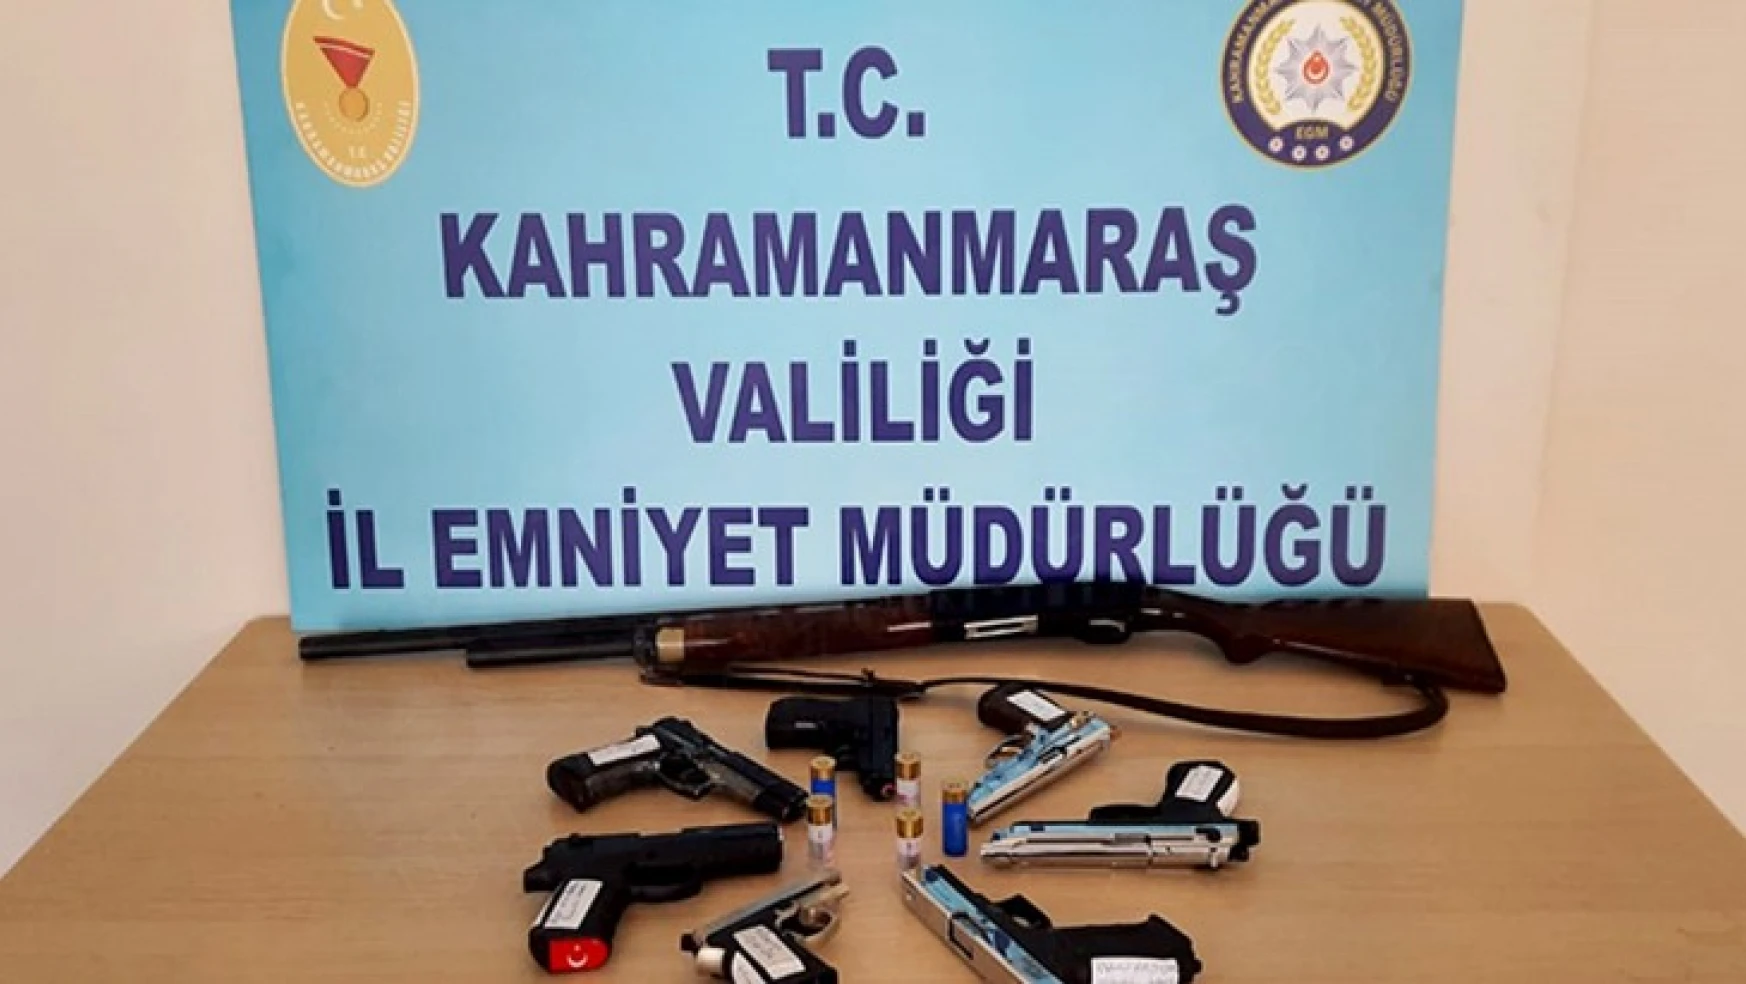 Kahramanmaraş'ta 18 kişide 18 silah ele geçirildi